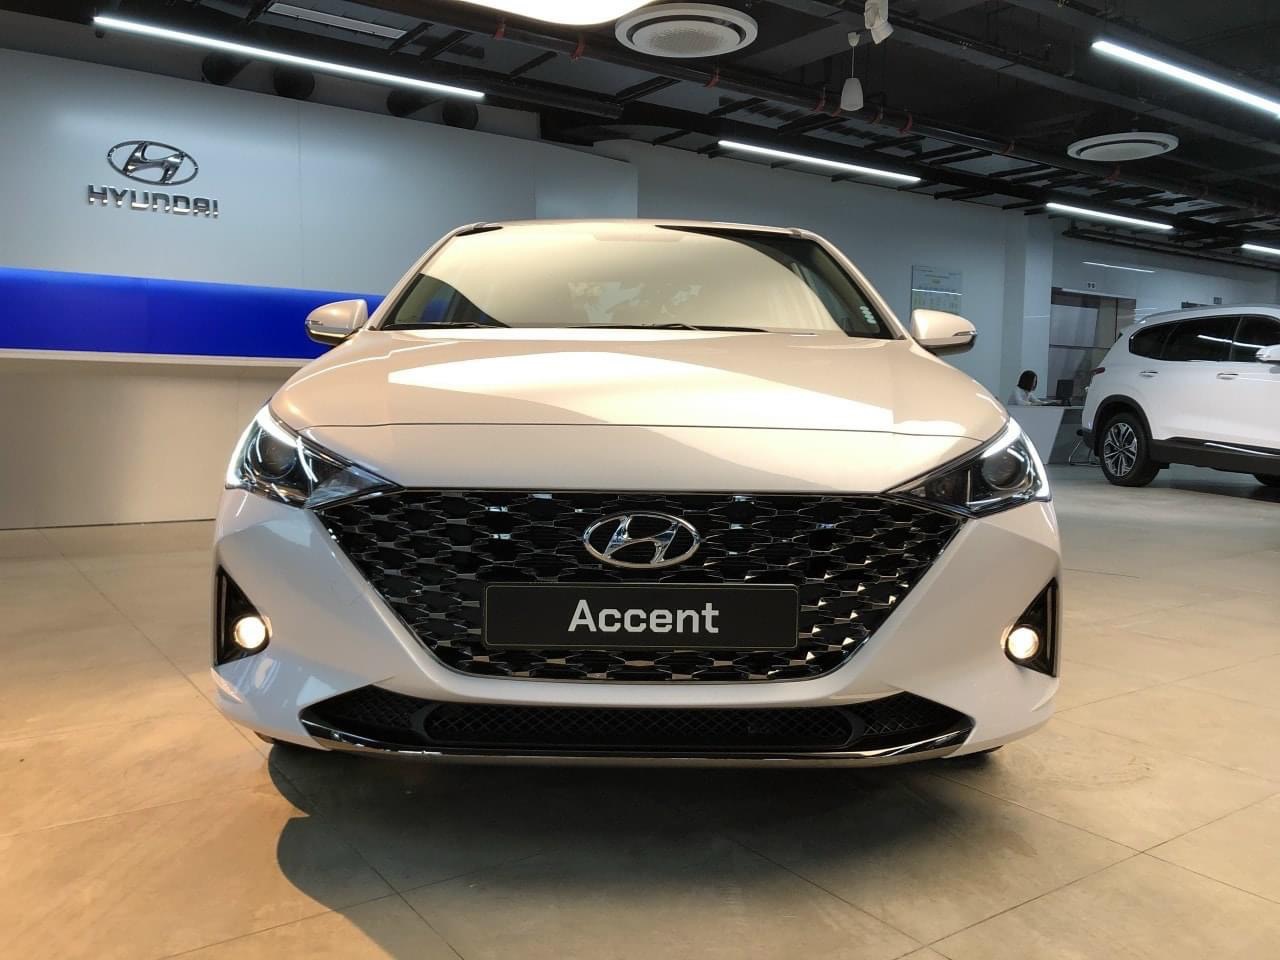 Hyundai Accent 2022 số tự động bản đặc bệt  HYUNDAI NGỌC AN  ĐẠI LÝ ỦY  QUYỀN CỦA TC MOTOR